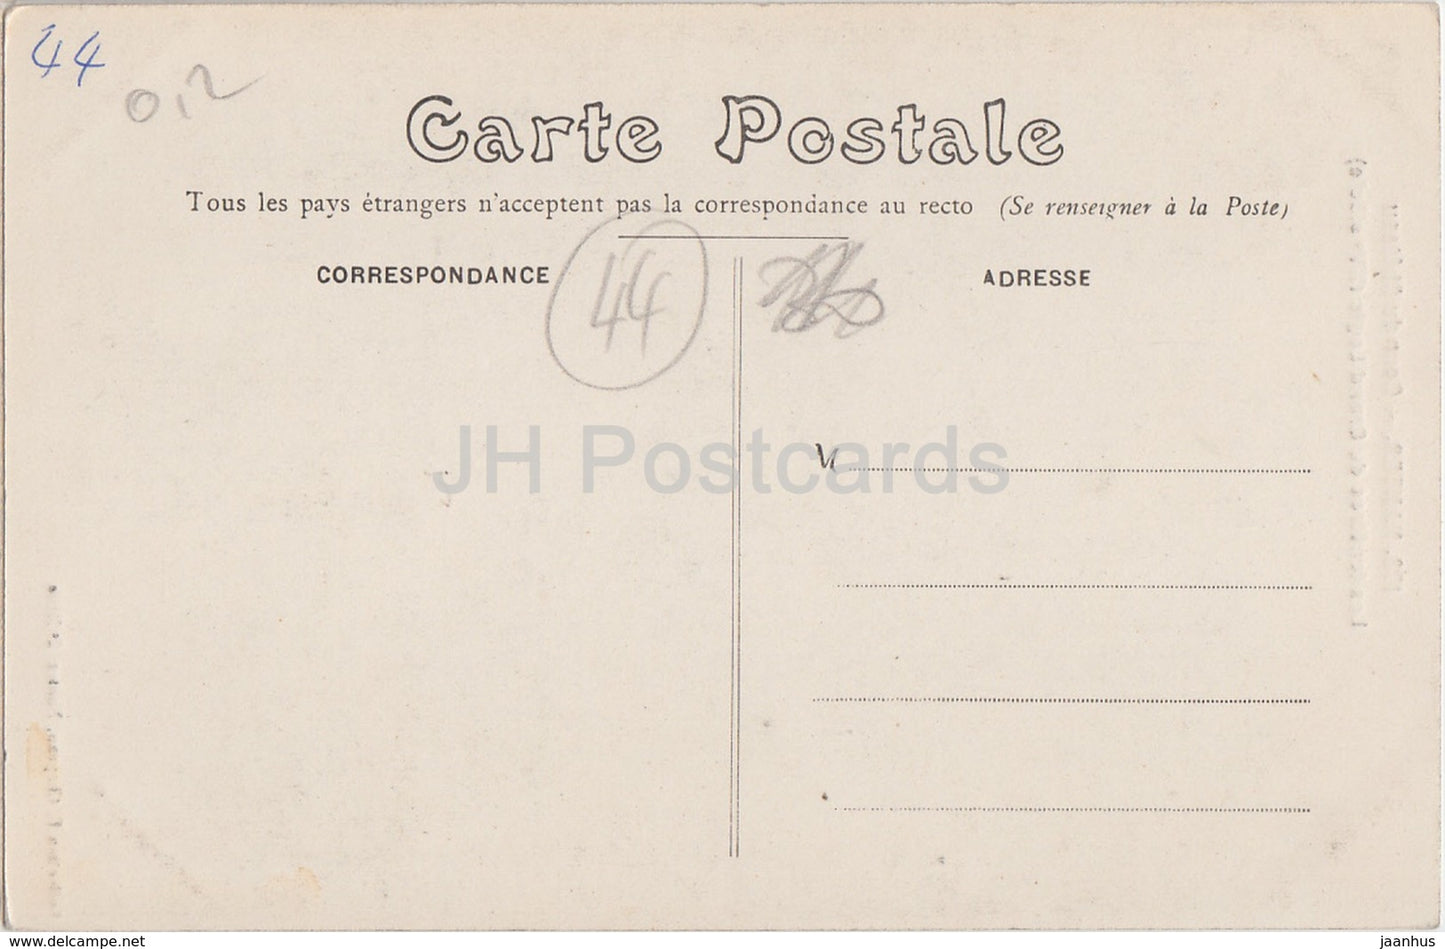 Nantes - Cour du Chateau - Les fenetres du Grand Logis - castle - 173 - old postcard - France - unused